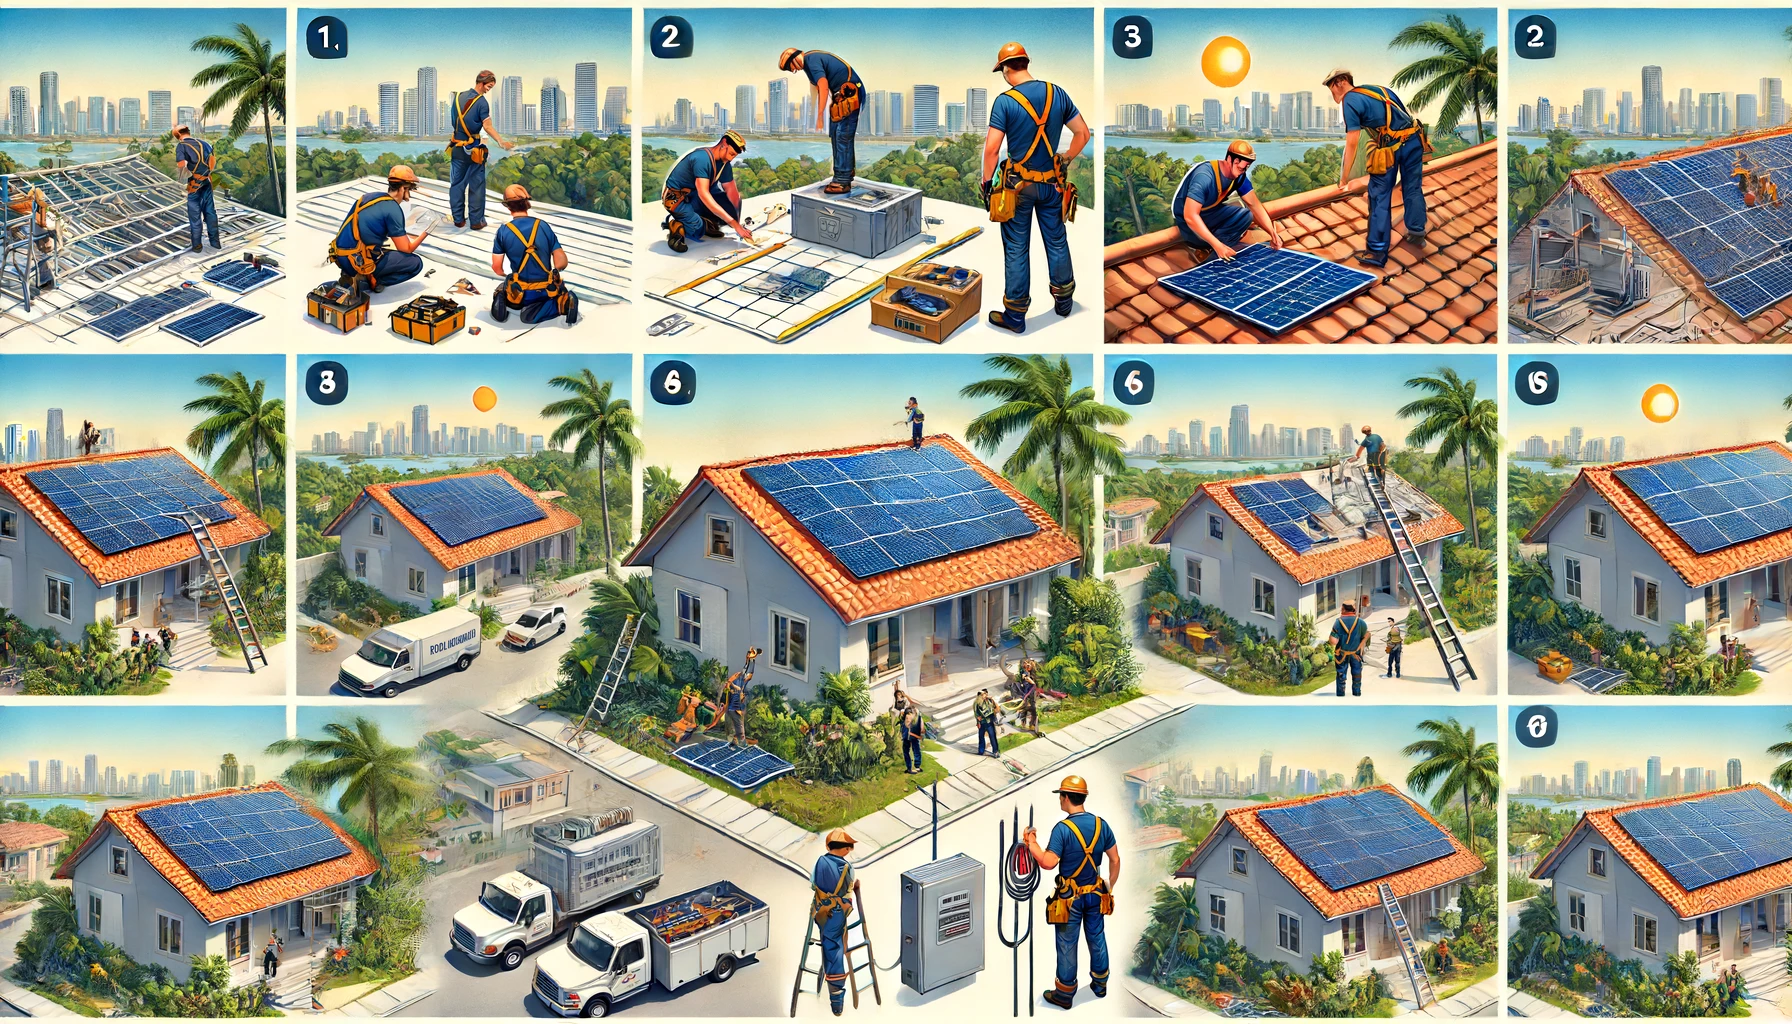 Solar Panel Installation in Miami